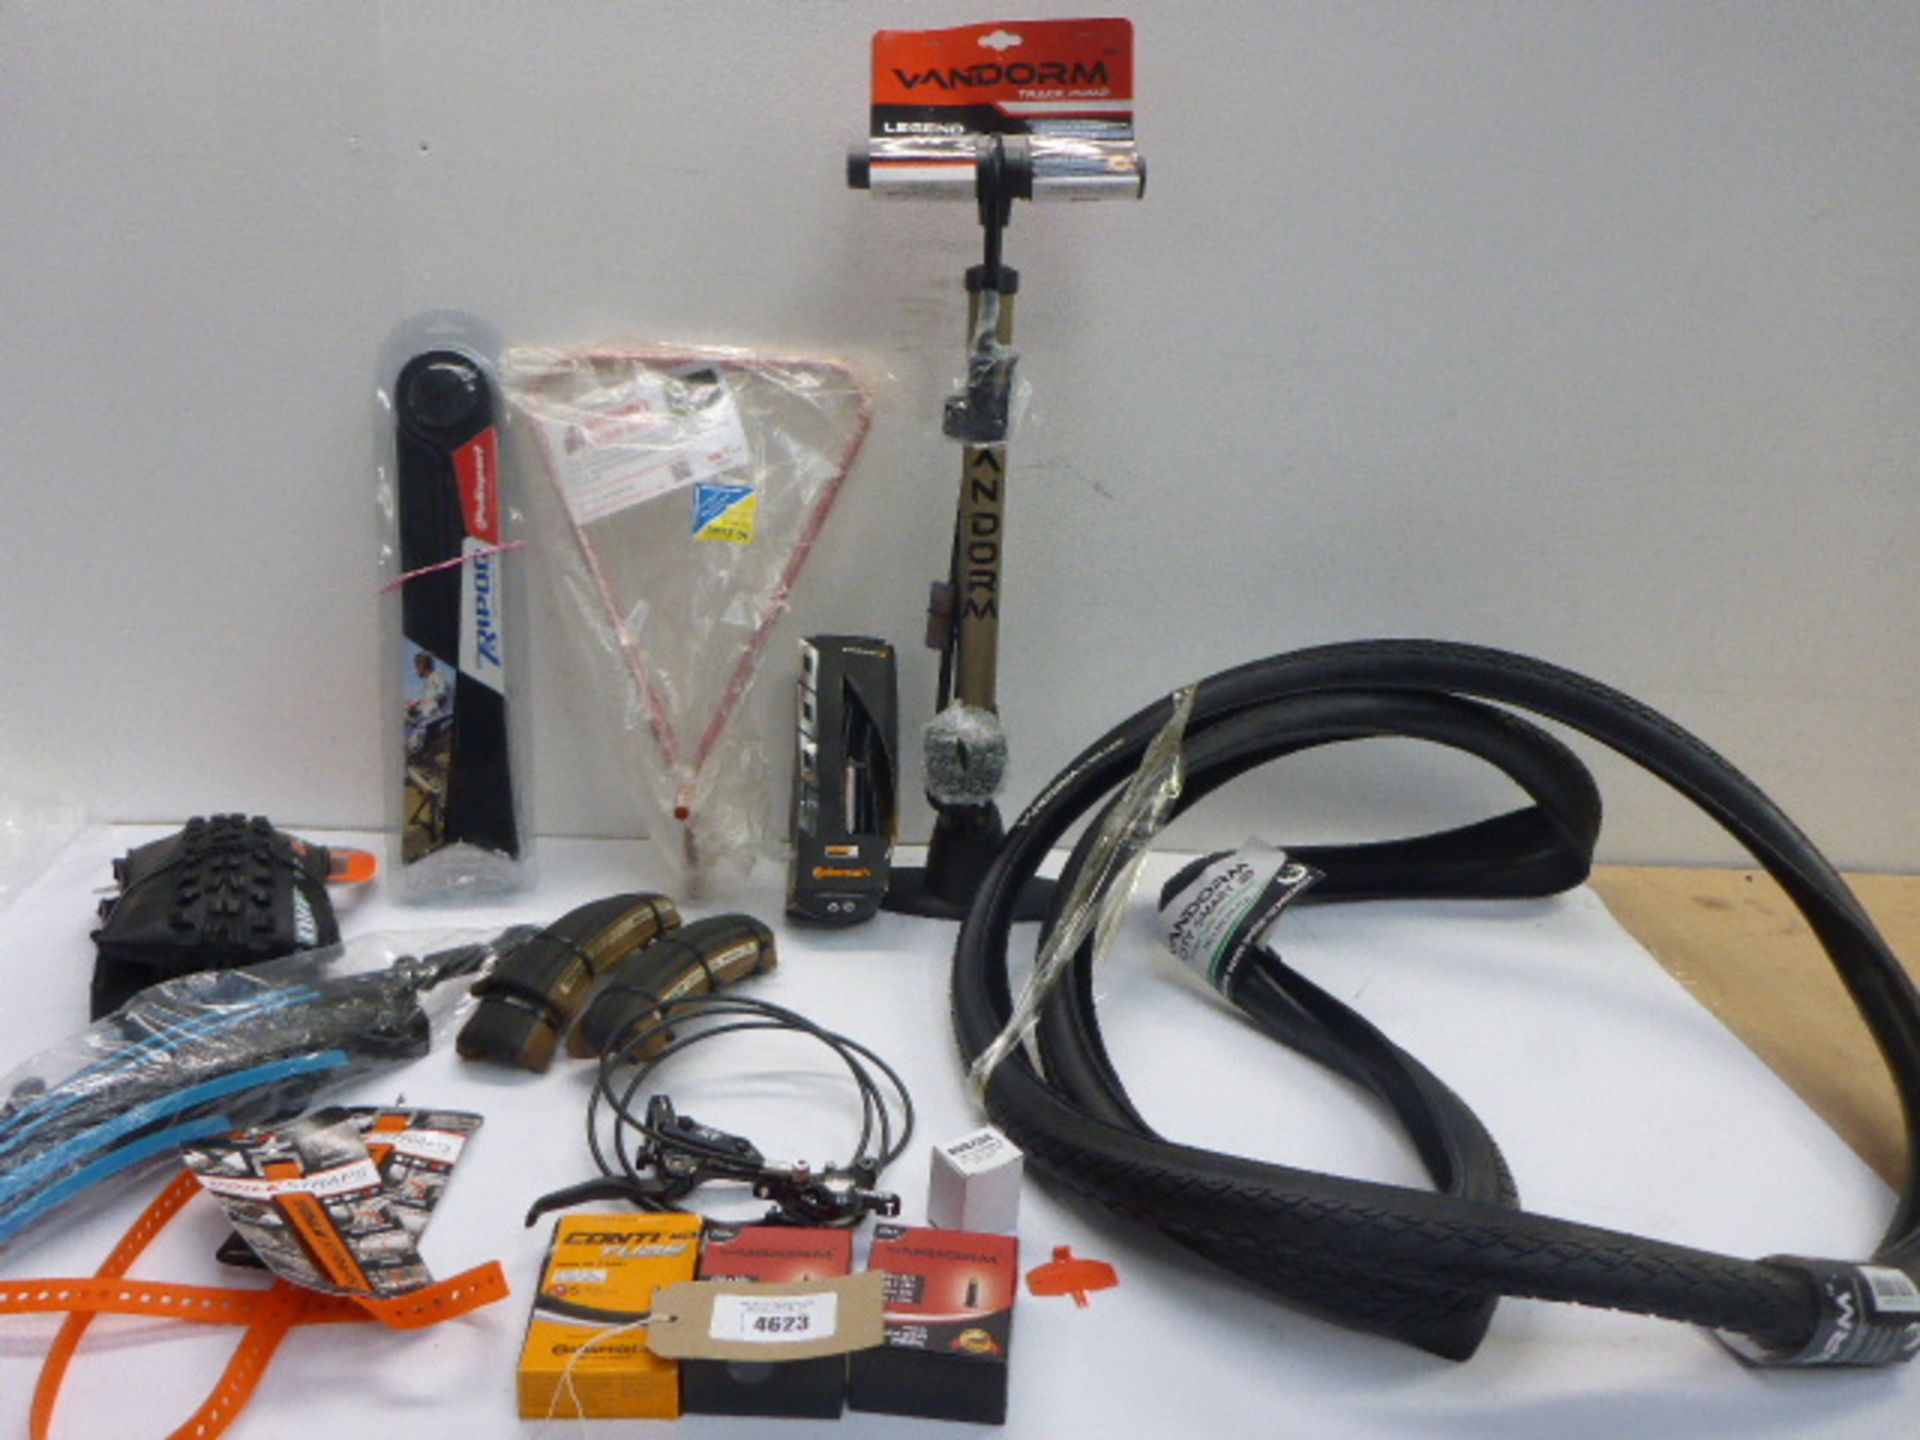 Vandorm track pump, triangle bike stand, inner tubes, bike wheels, gear/brake leavers etc